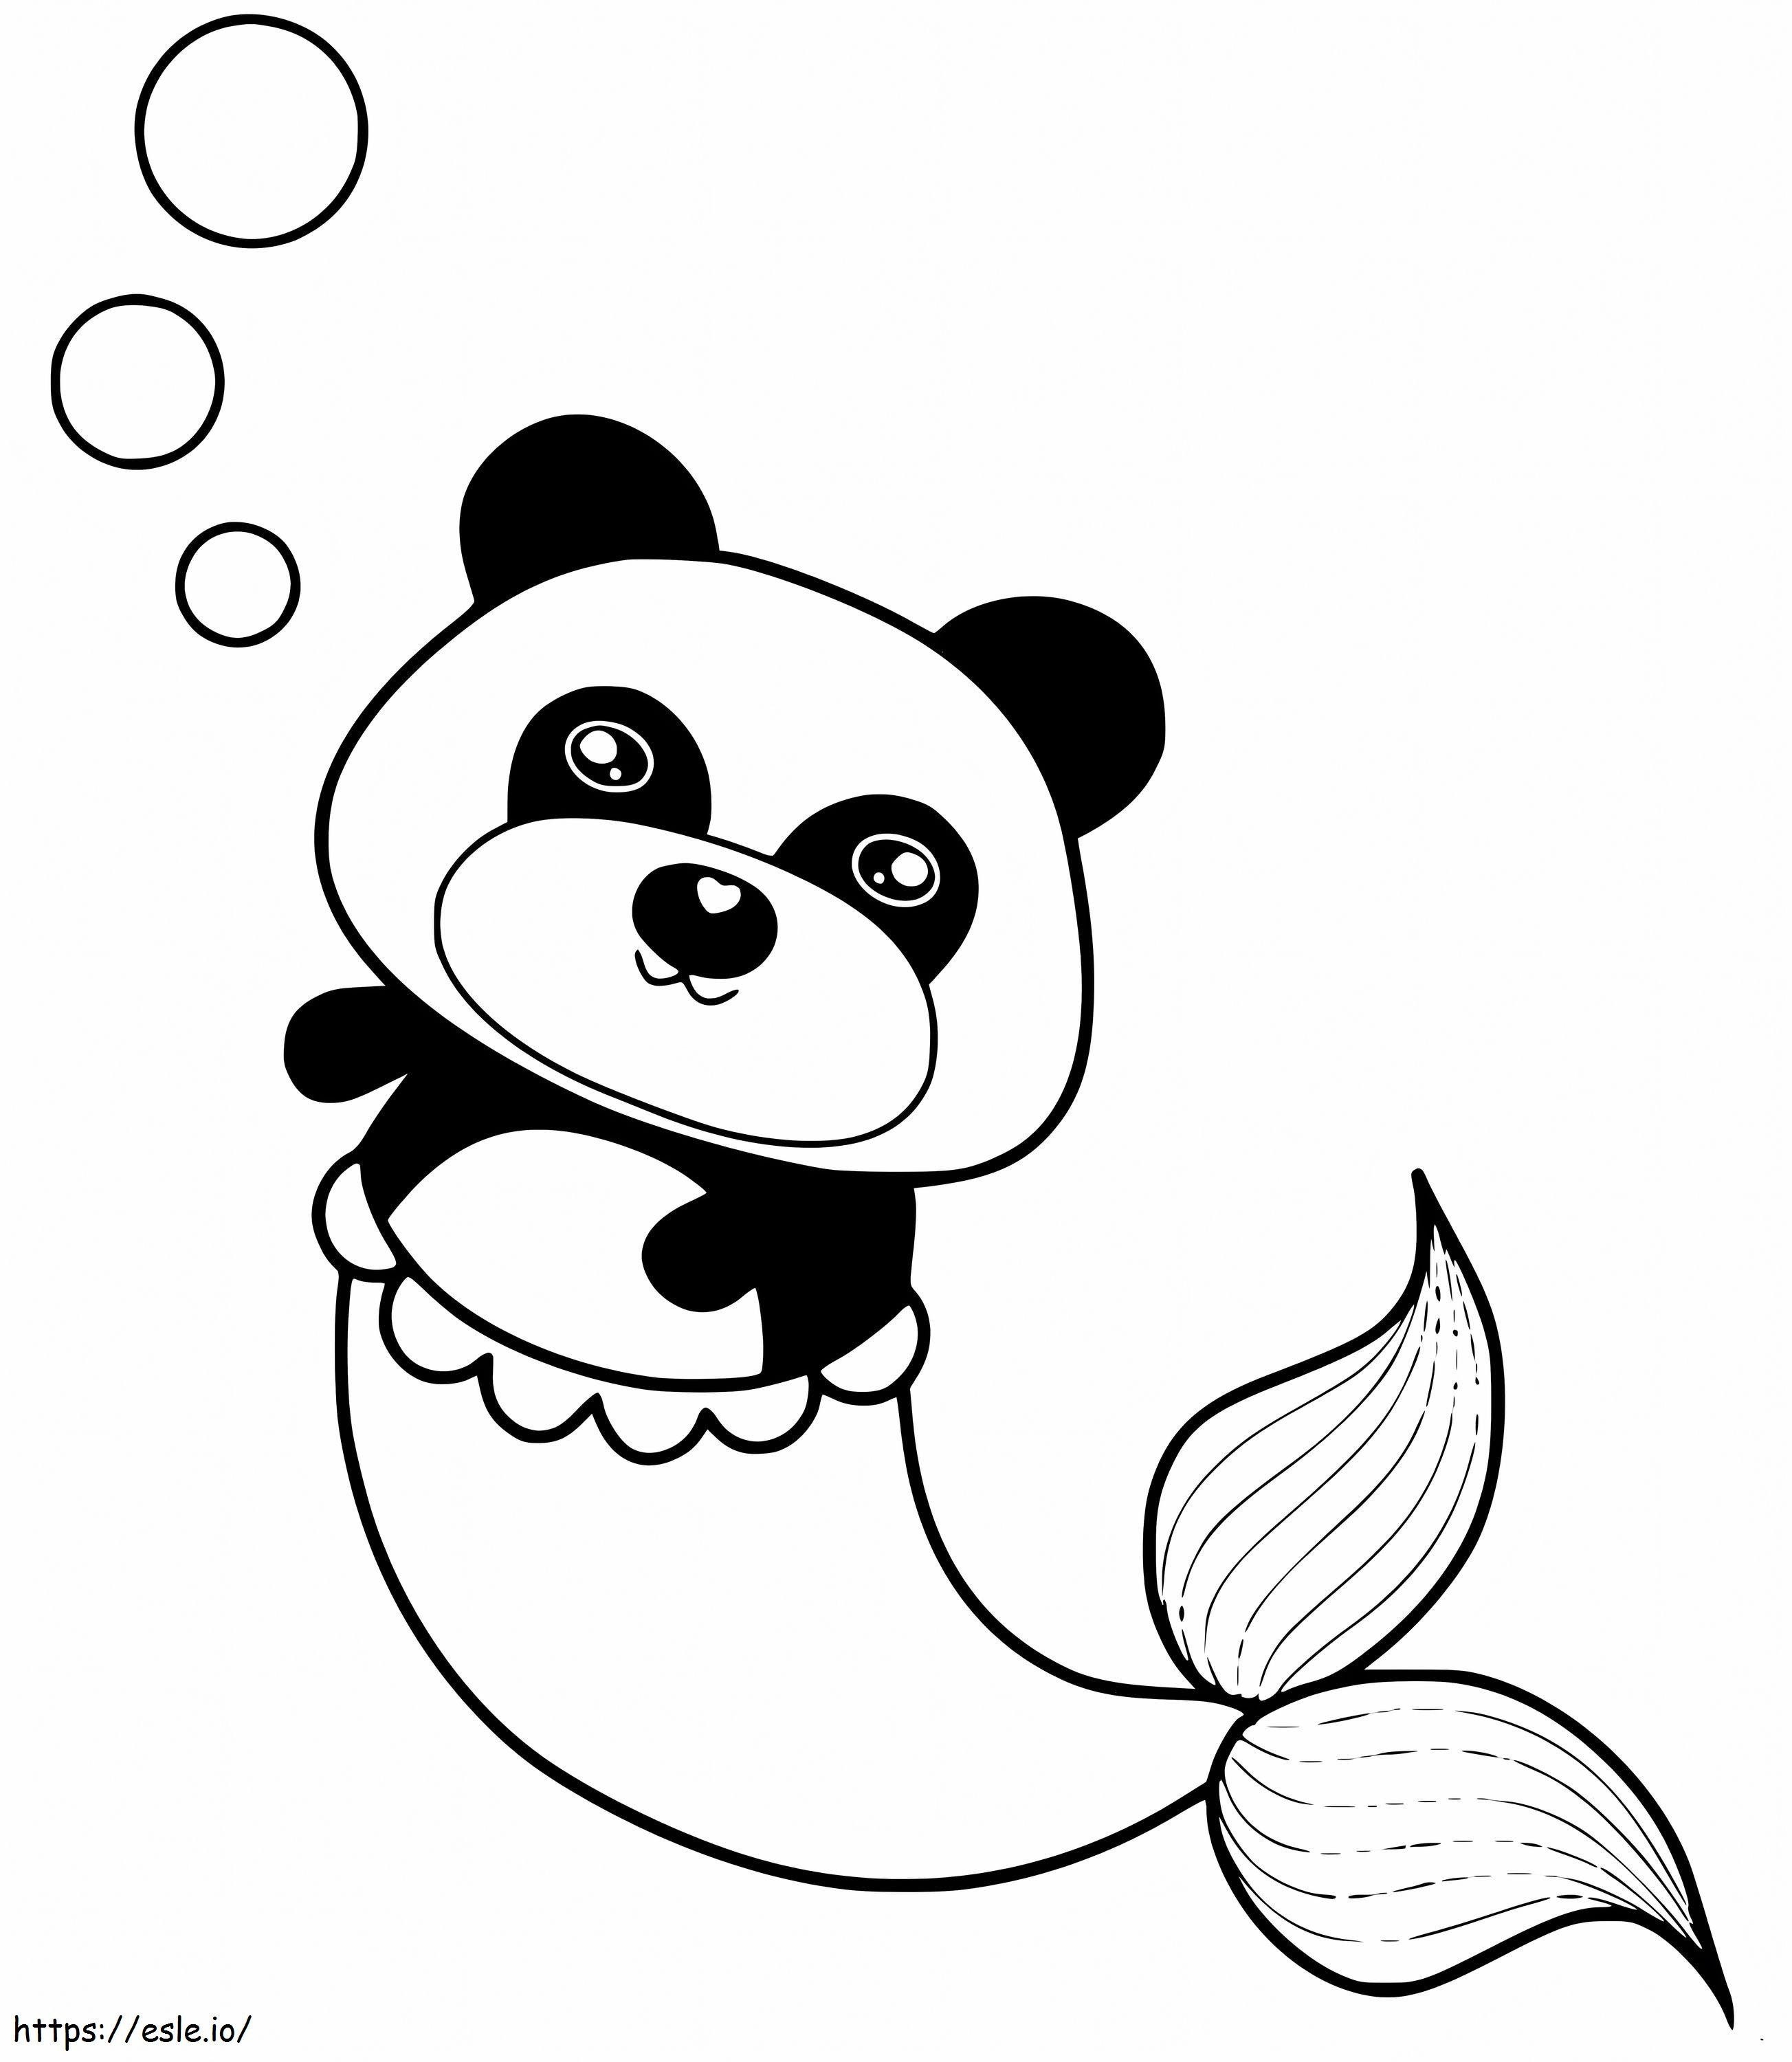 Sirena panda 1 da colorare